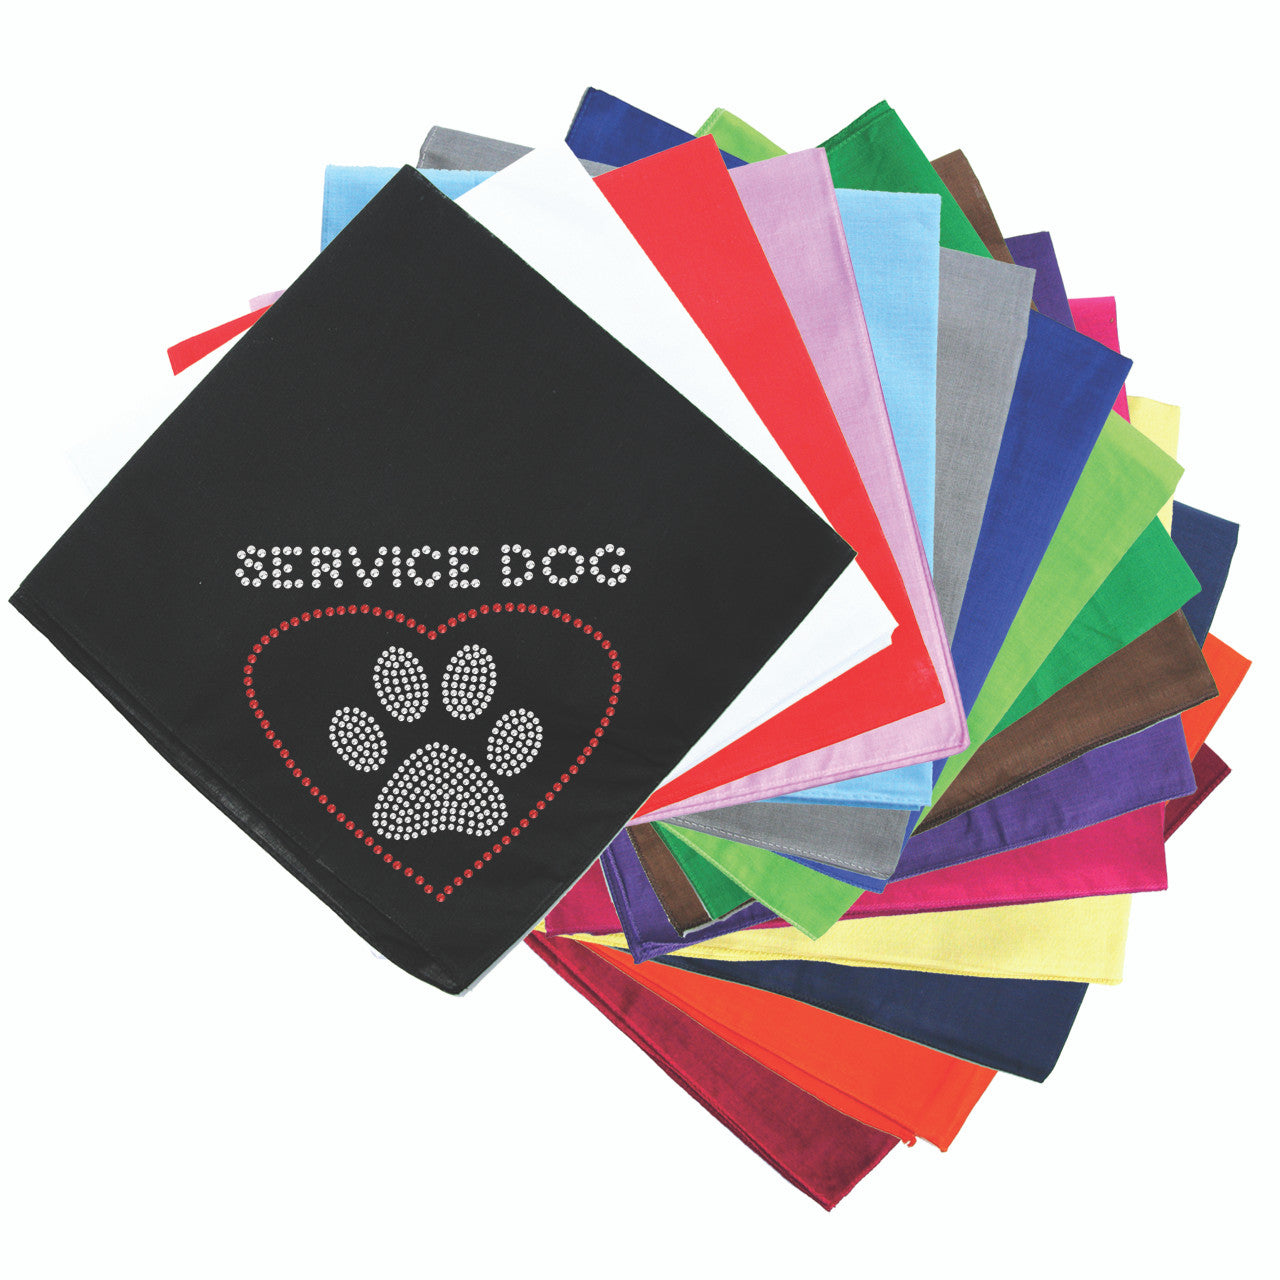 Service Dog bandana